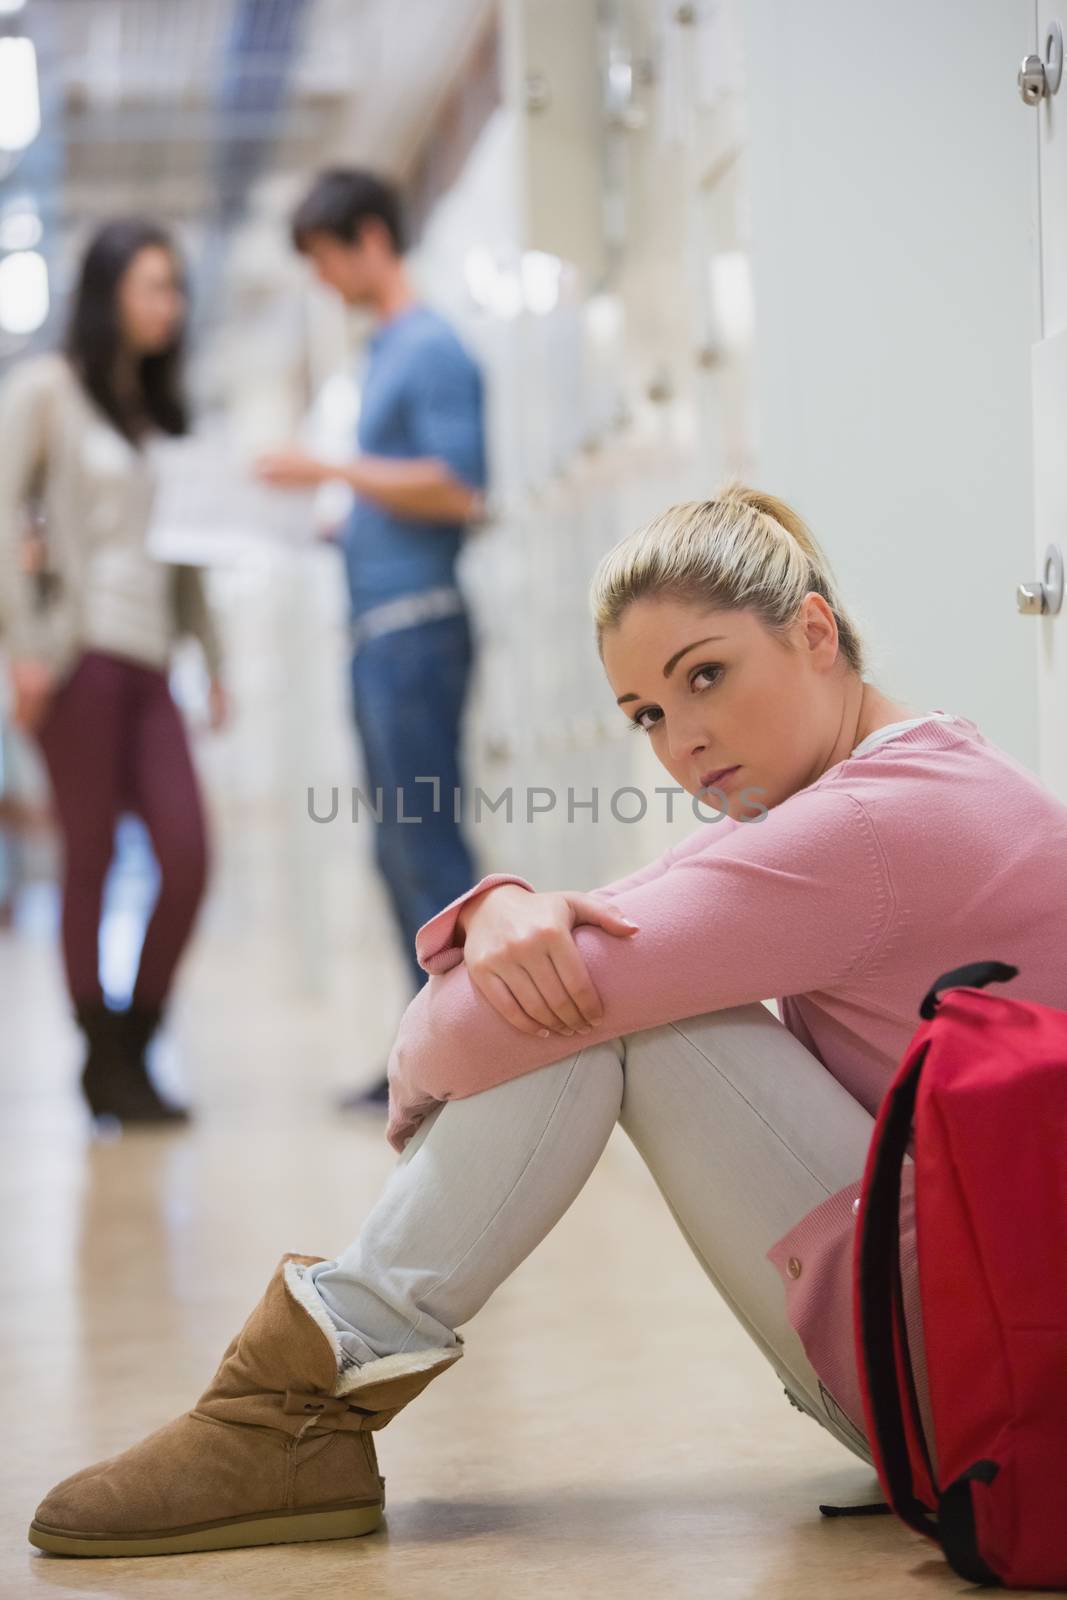 Sad student sitting on floor of college hallway against lockers